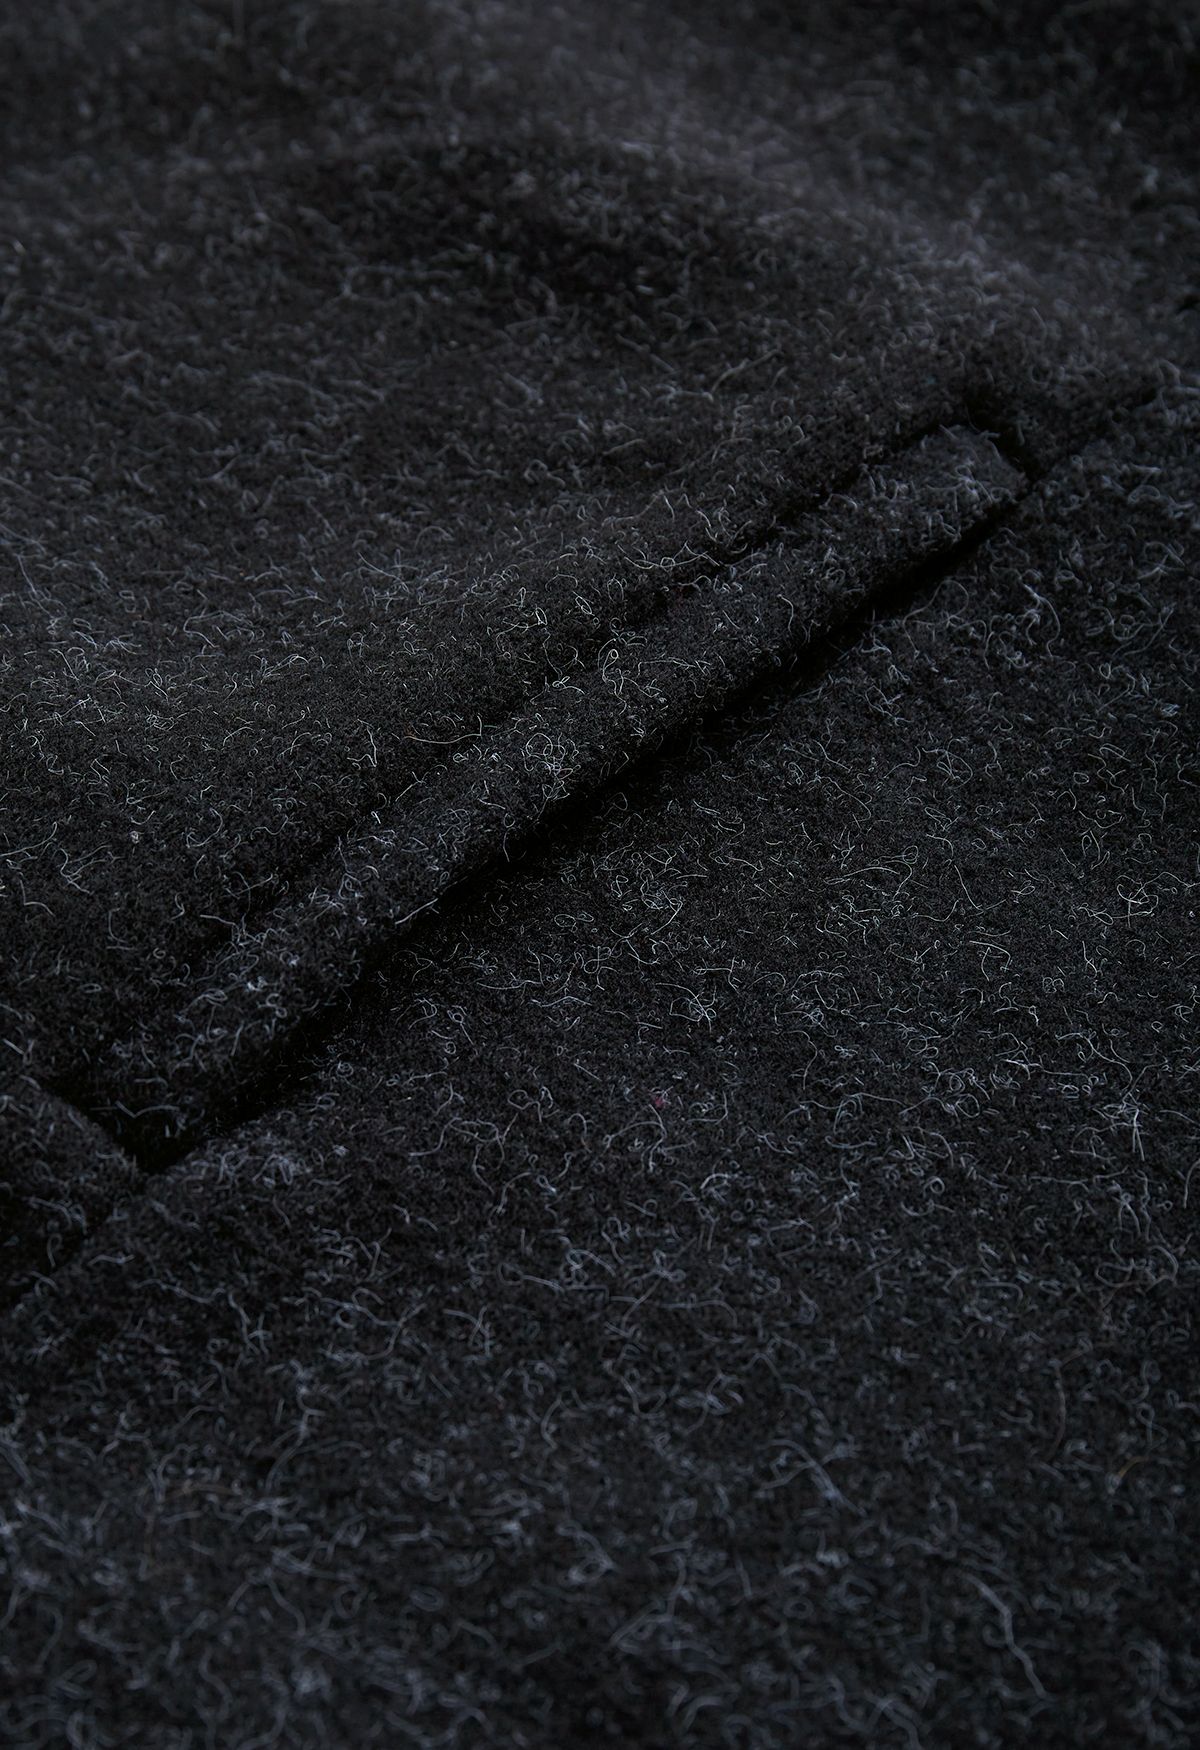 Poncho de pele sintética com laço auto-atado em preto